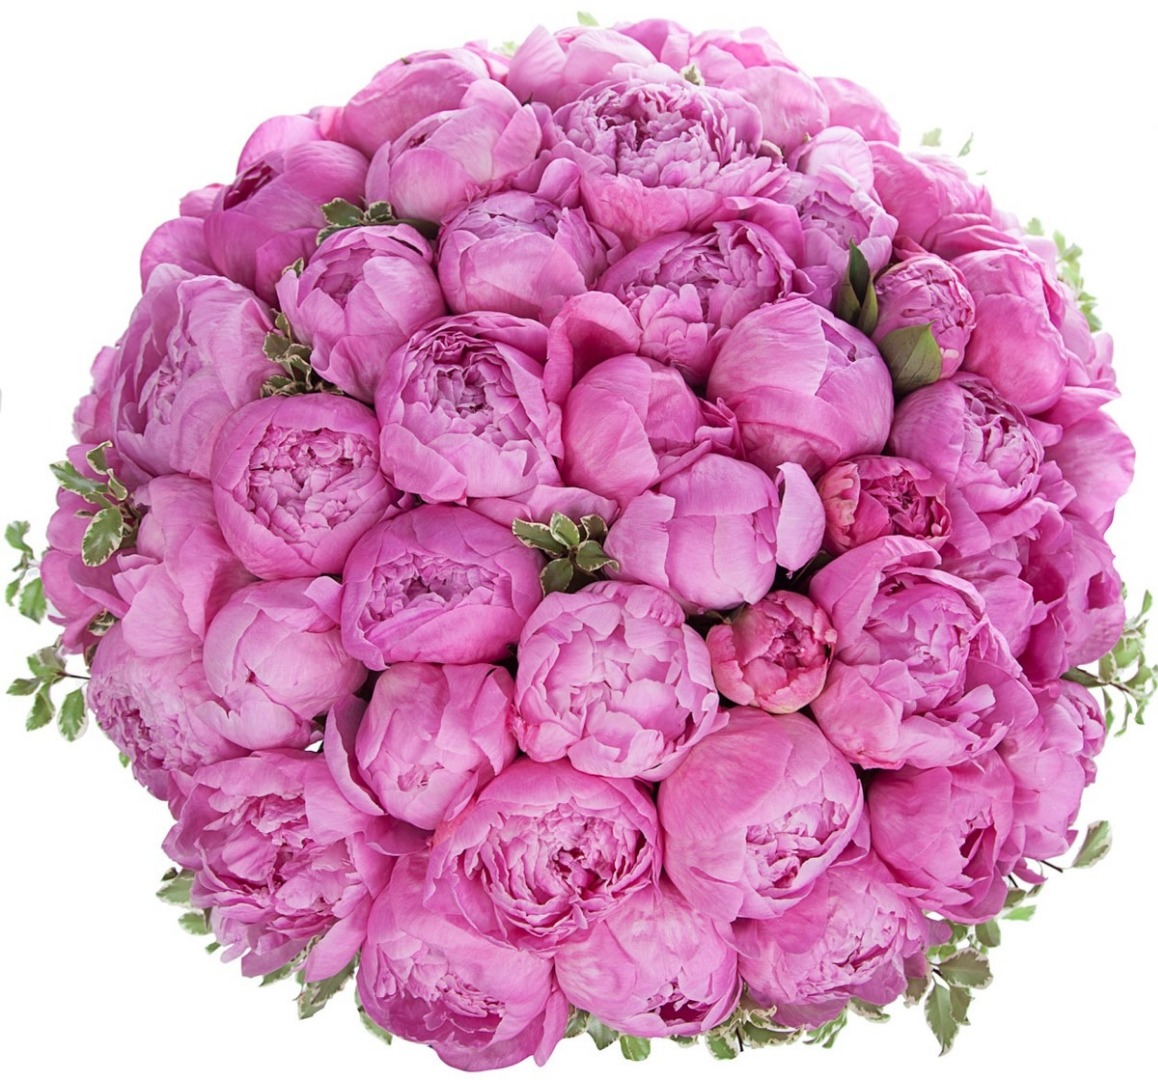 купить цветы Коробка с ярко-розовыми пионами